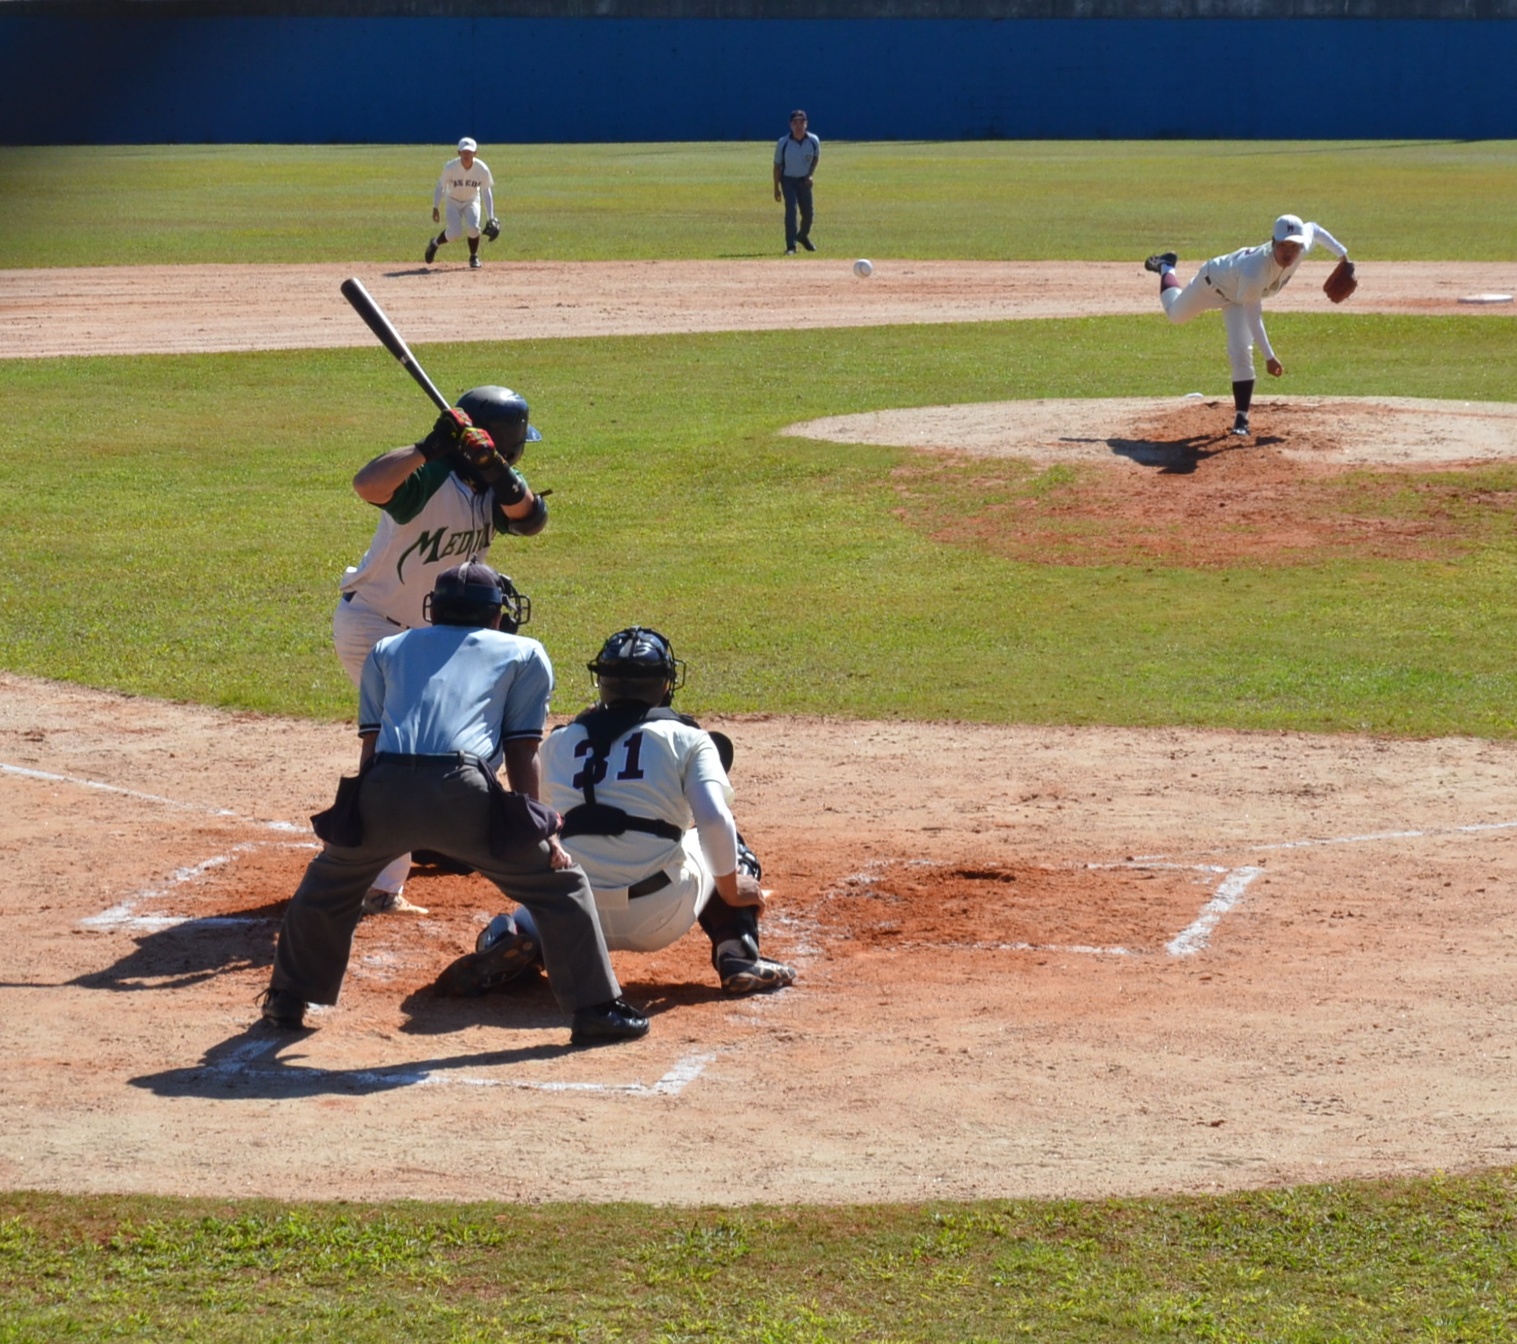 A foto mostra uma partida de beisebol no Estádio Municipal Mie Nishi